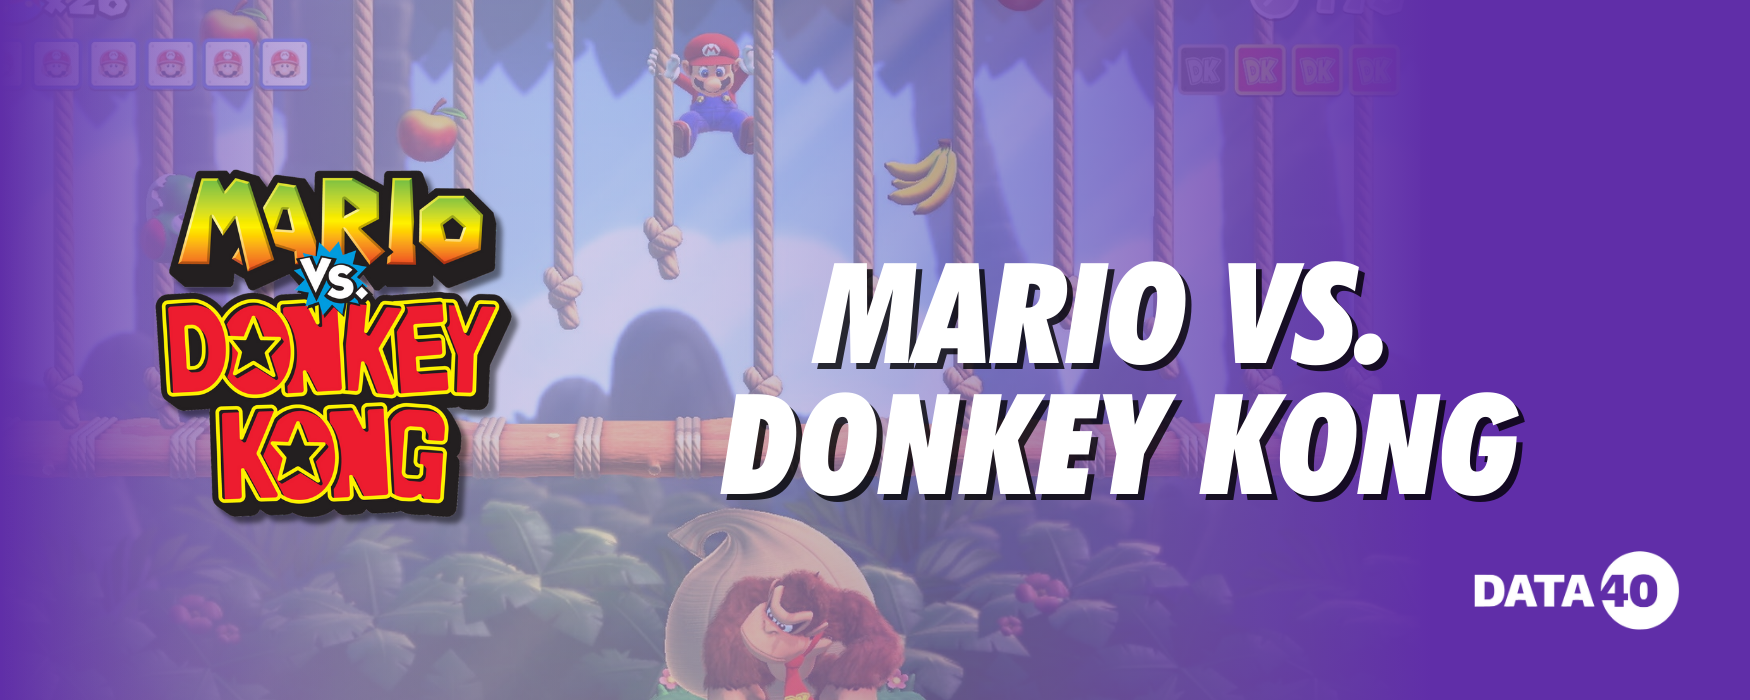 Mario vs. Donkey Kong(1)